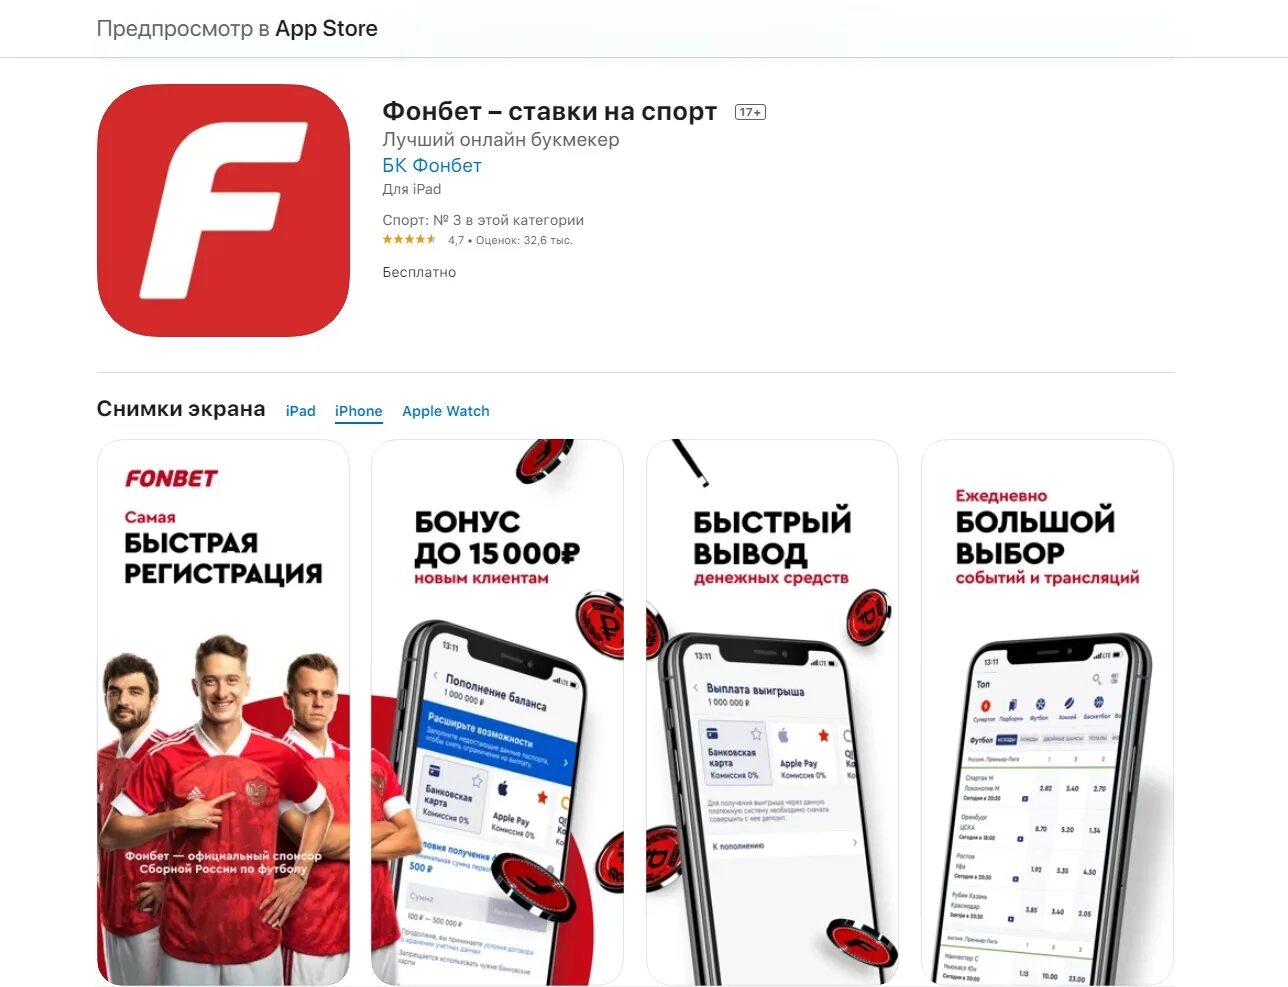 Фонбет трансляция футбол. Фонбет приложение. Фонбет логотип приложения. Приложение Фонбет на айфон. Фонбет Спонсор.